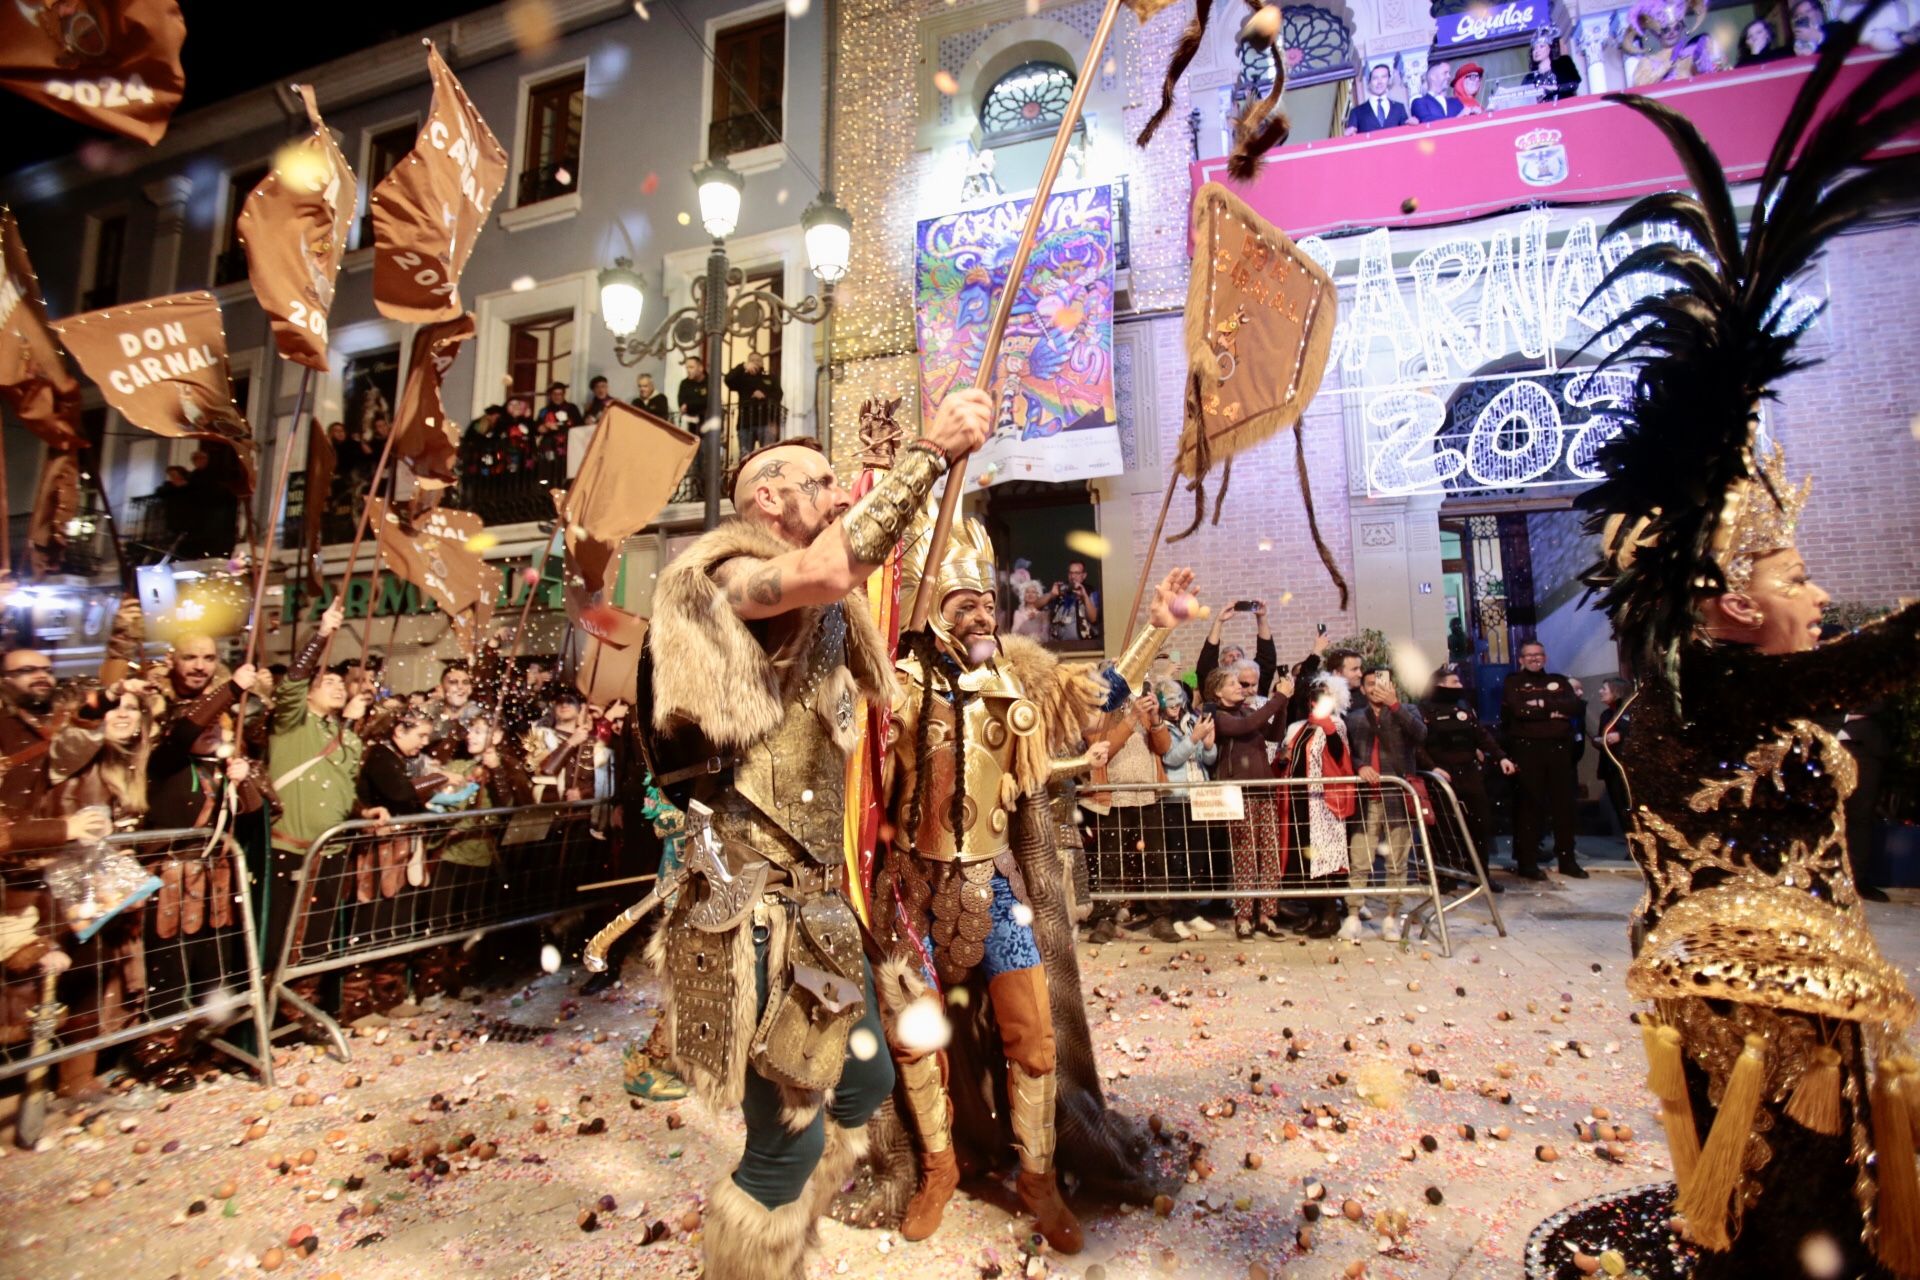 Batalla de Don Carnal y Doña Cuaresma, y pregón del Carnaval de Águilas en fotos